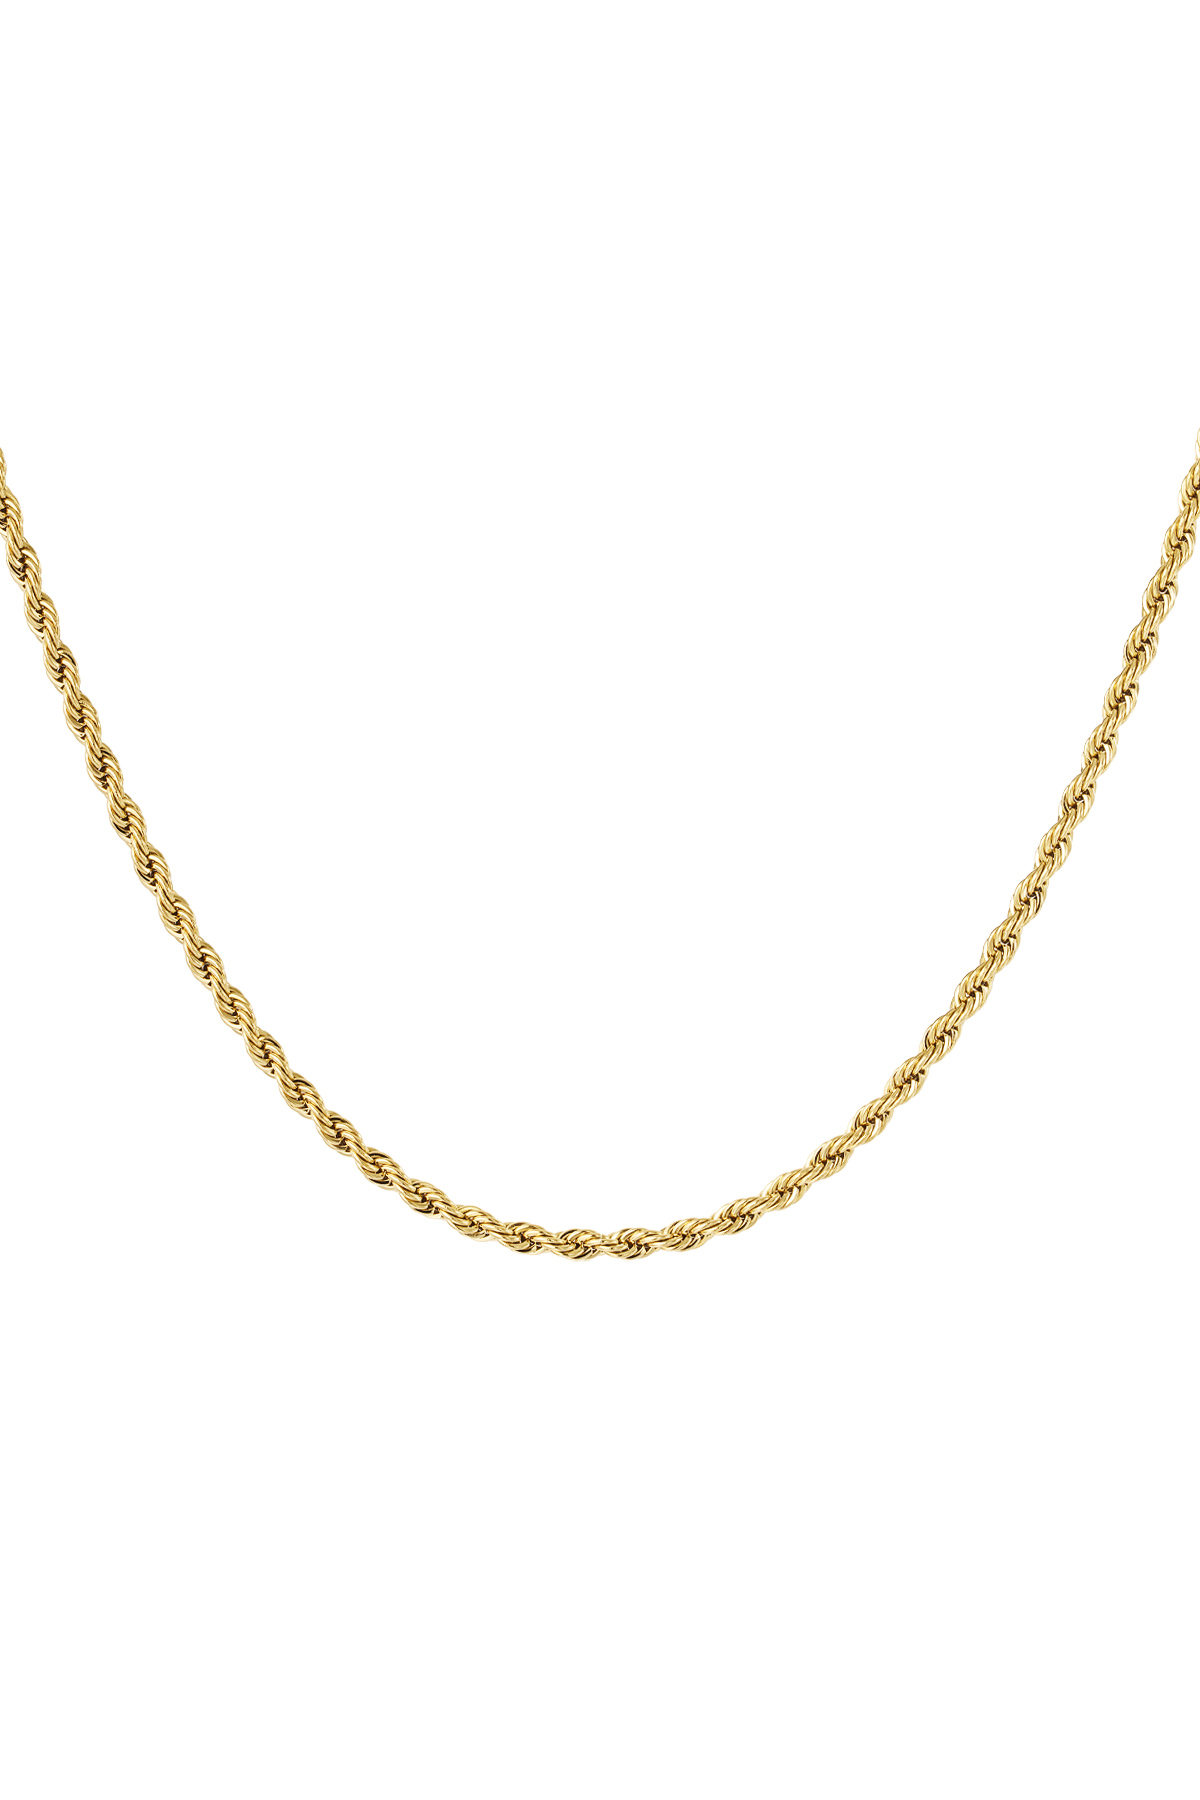 Unisex Halskette gedreht 50cm - Gold - 4,0MM h5 